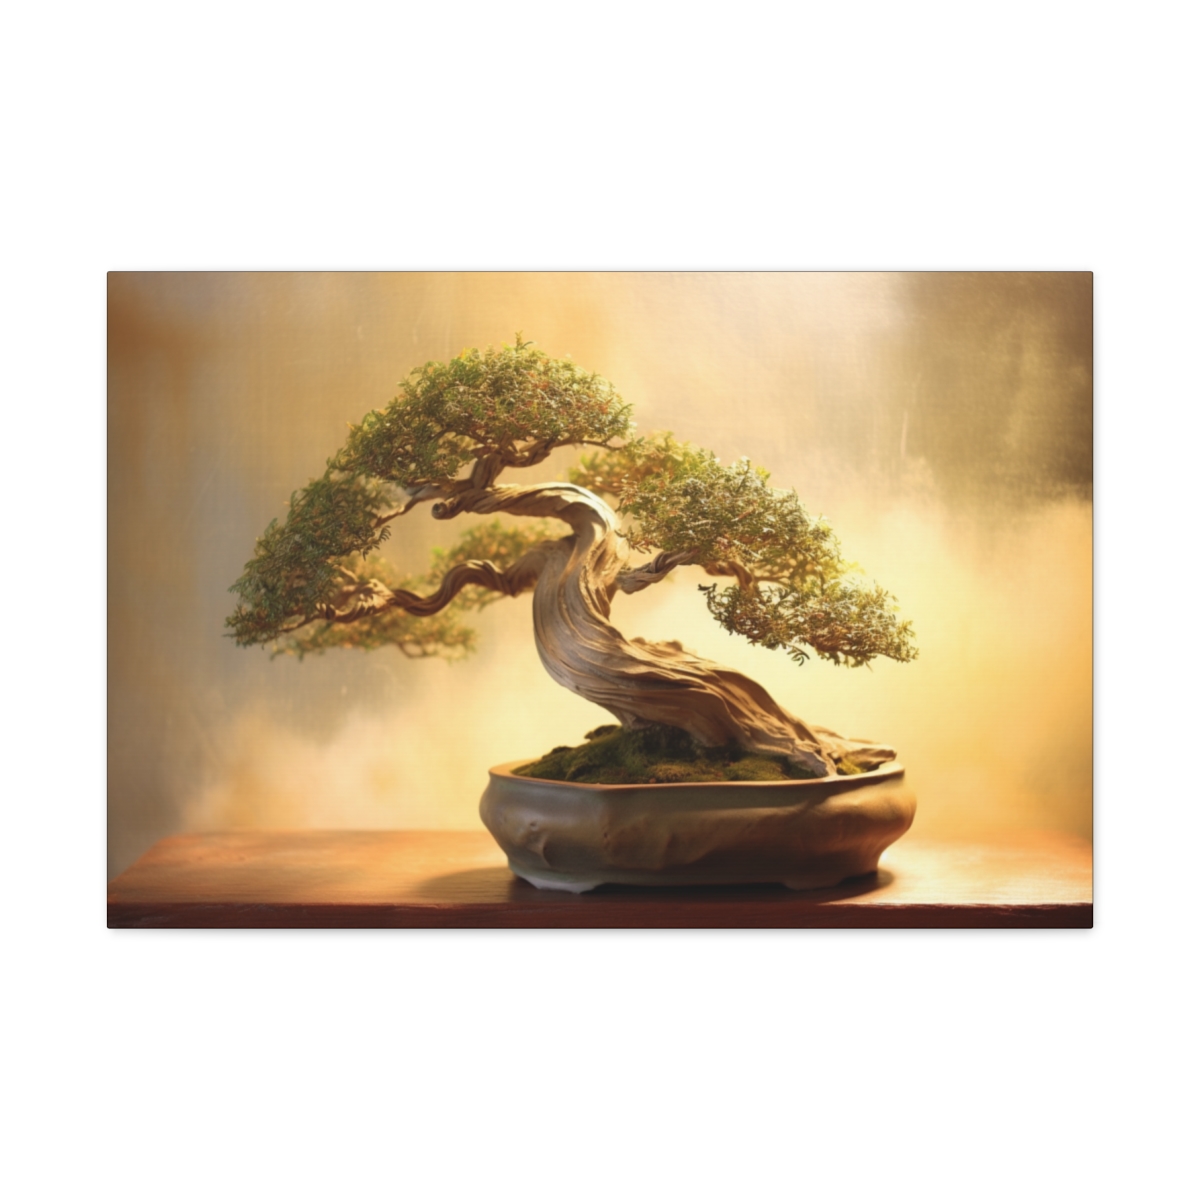 Zen Buddhist Art Print: Whispering Leaves